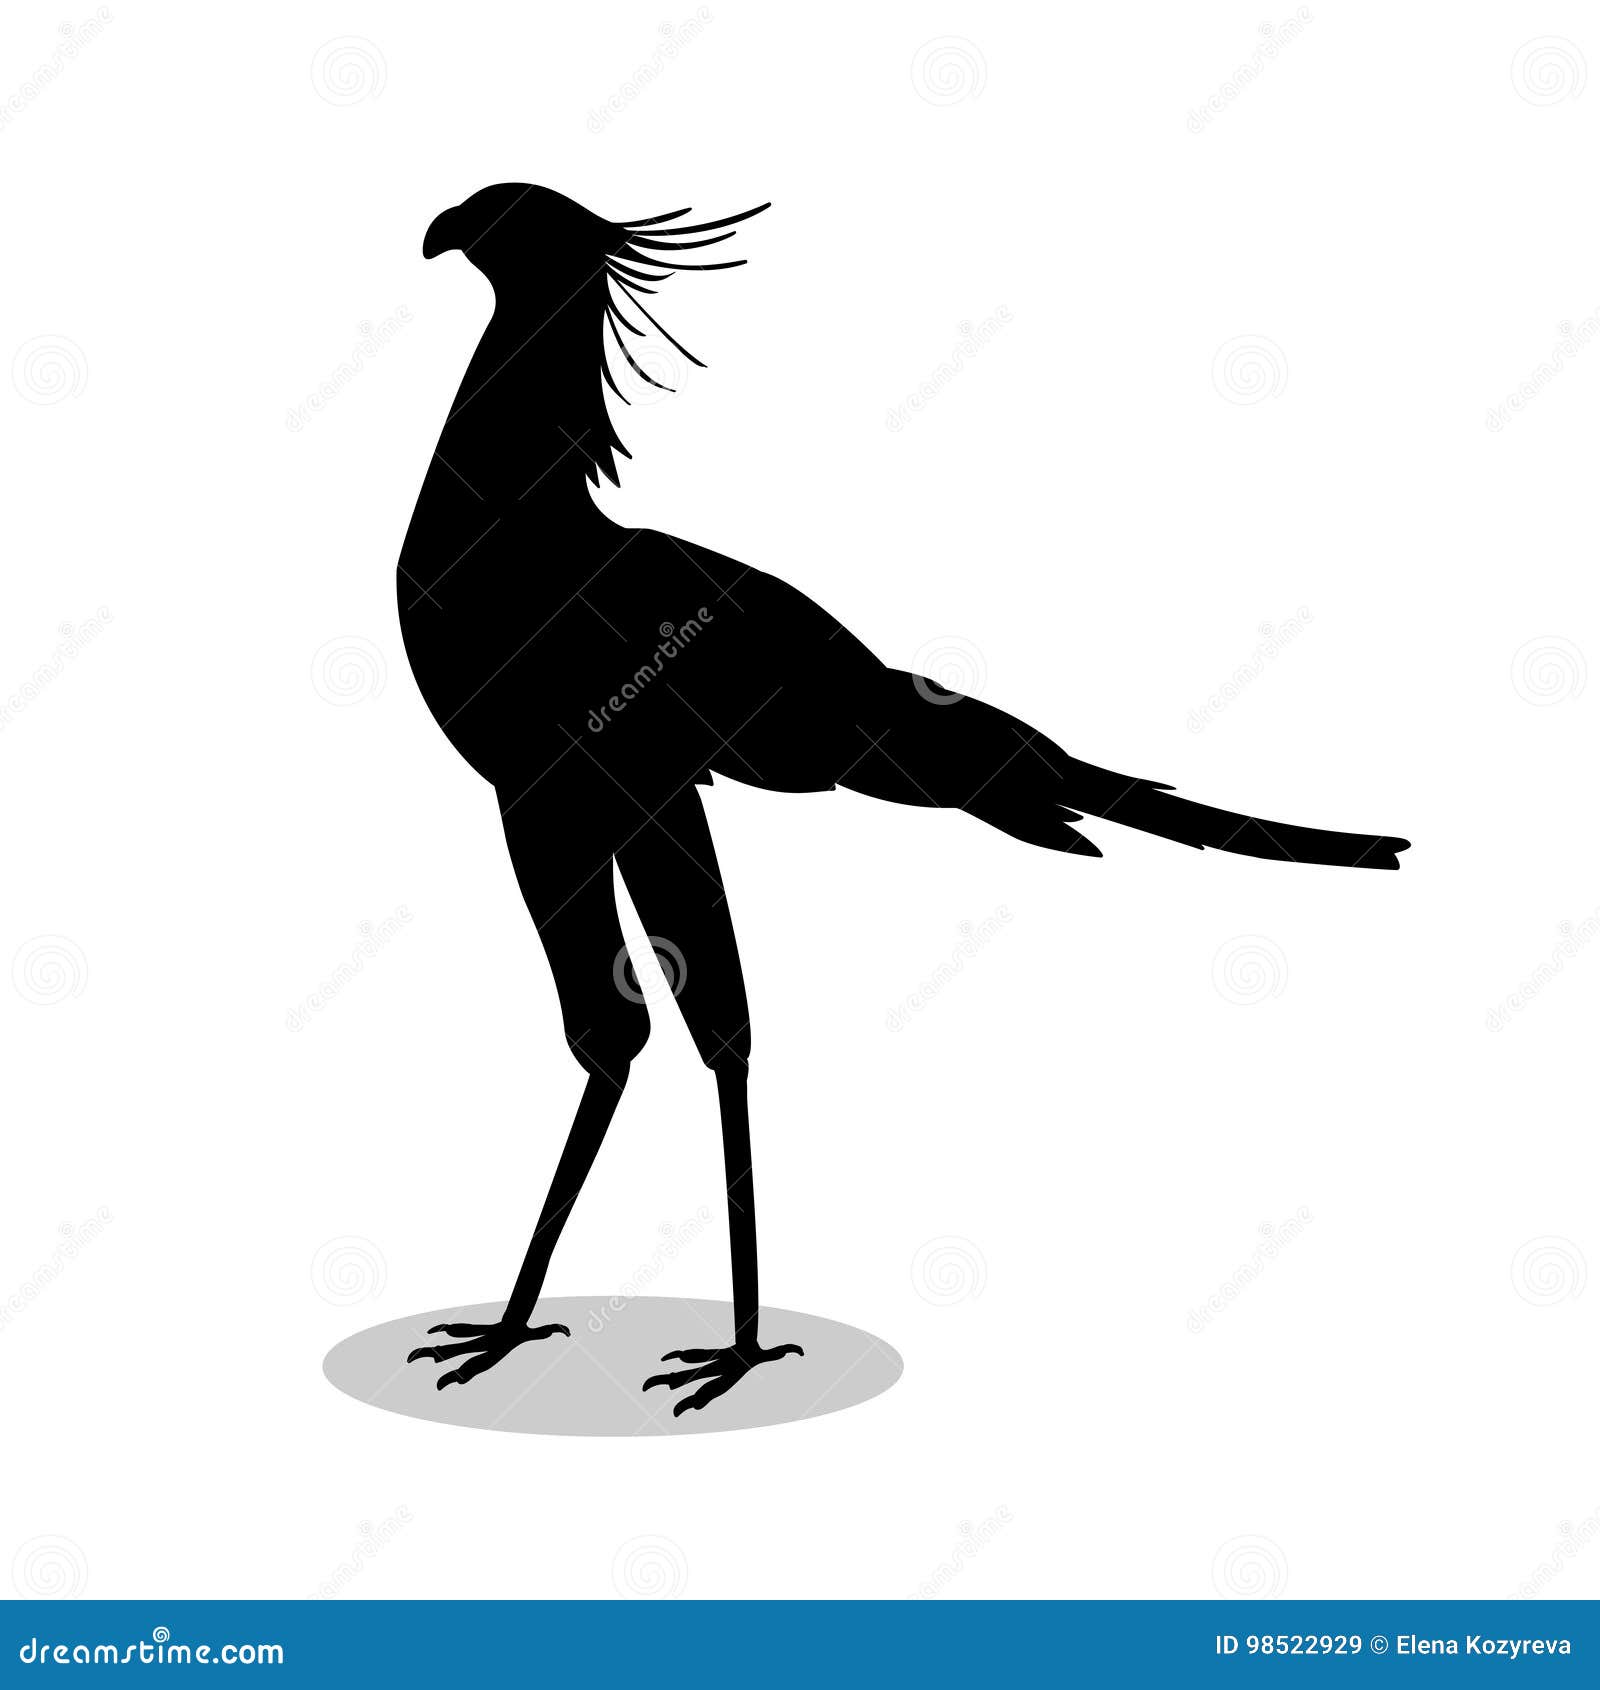 secretary bird black silhouette animal